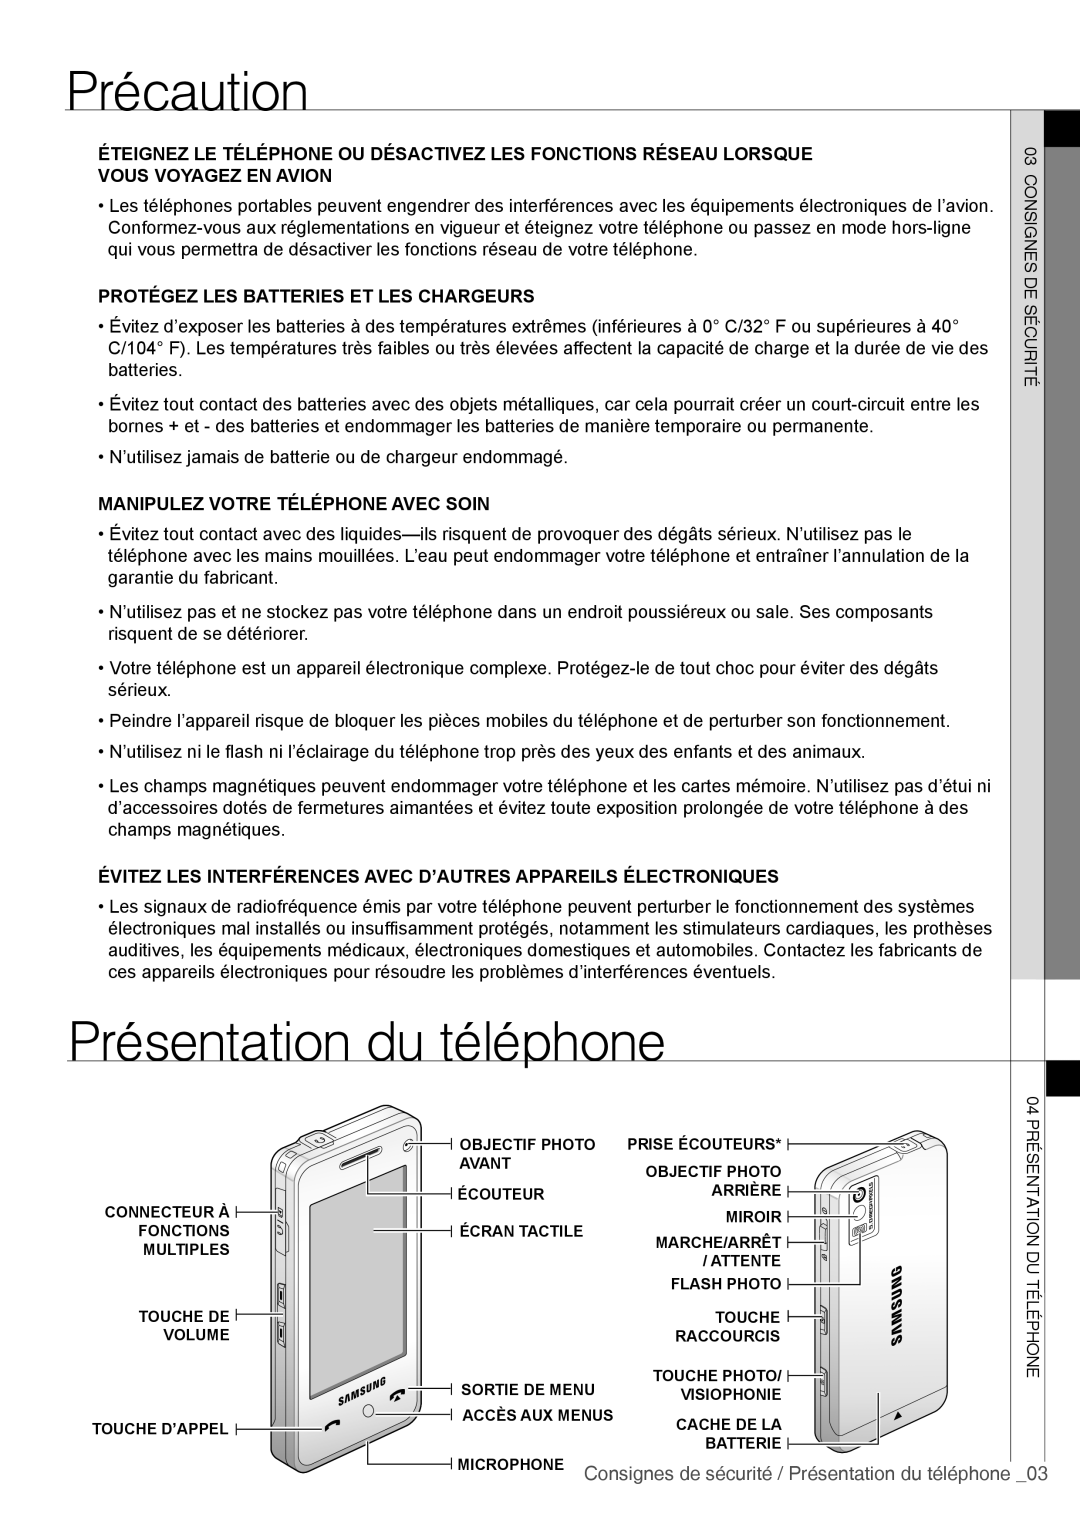 Samsung SGH-F490ZKAFTM, SGH-F490ZKABOG manual Précaution, Microphone Consignes de sécurité / Présentation du téléphone 